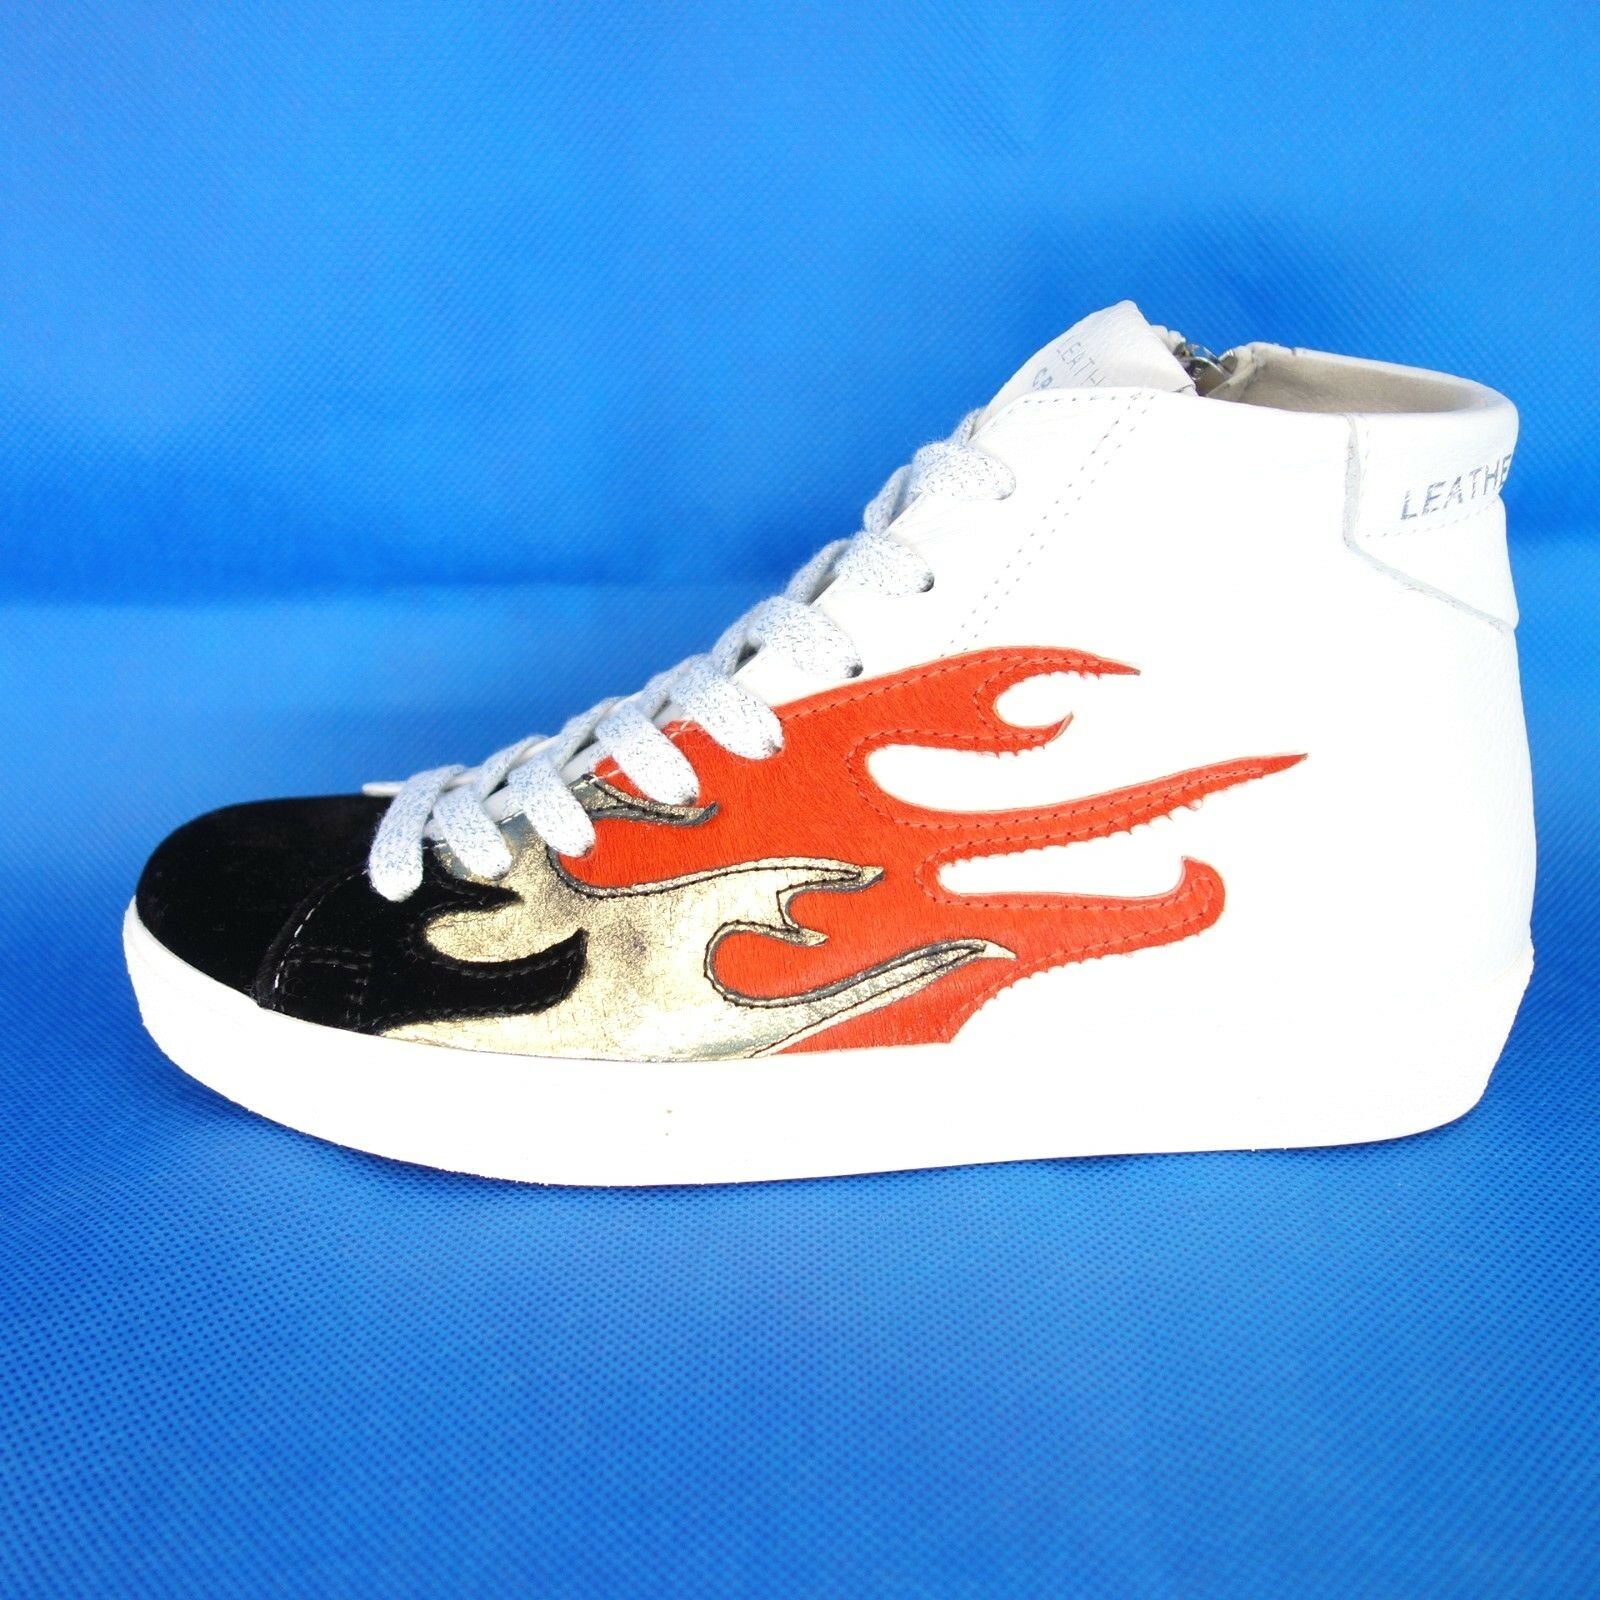 Leather Crown Damen Schuhe Sneaker Sportschuhe Gr 37 Weiß Leder Fell Np 319 Neu